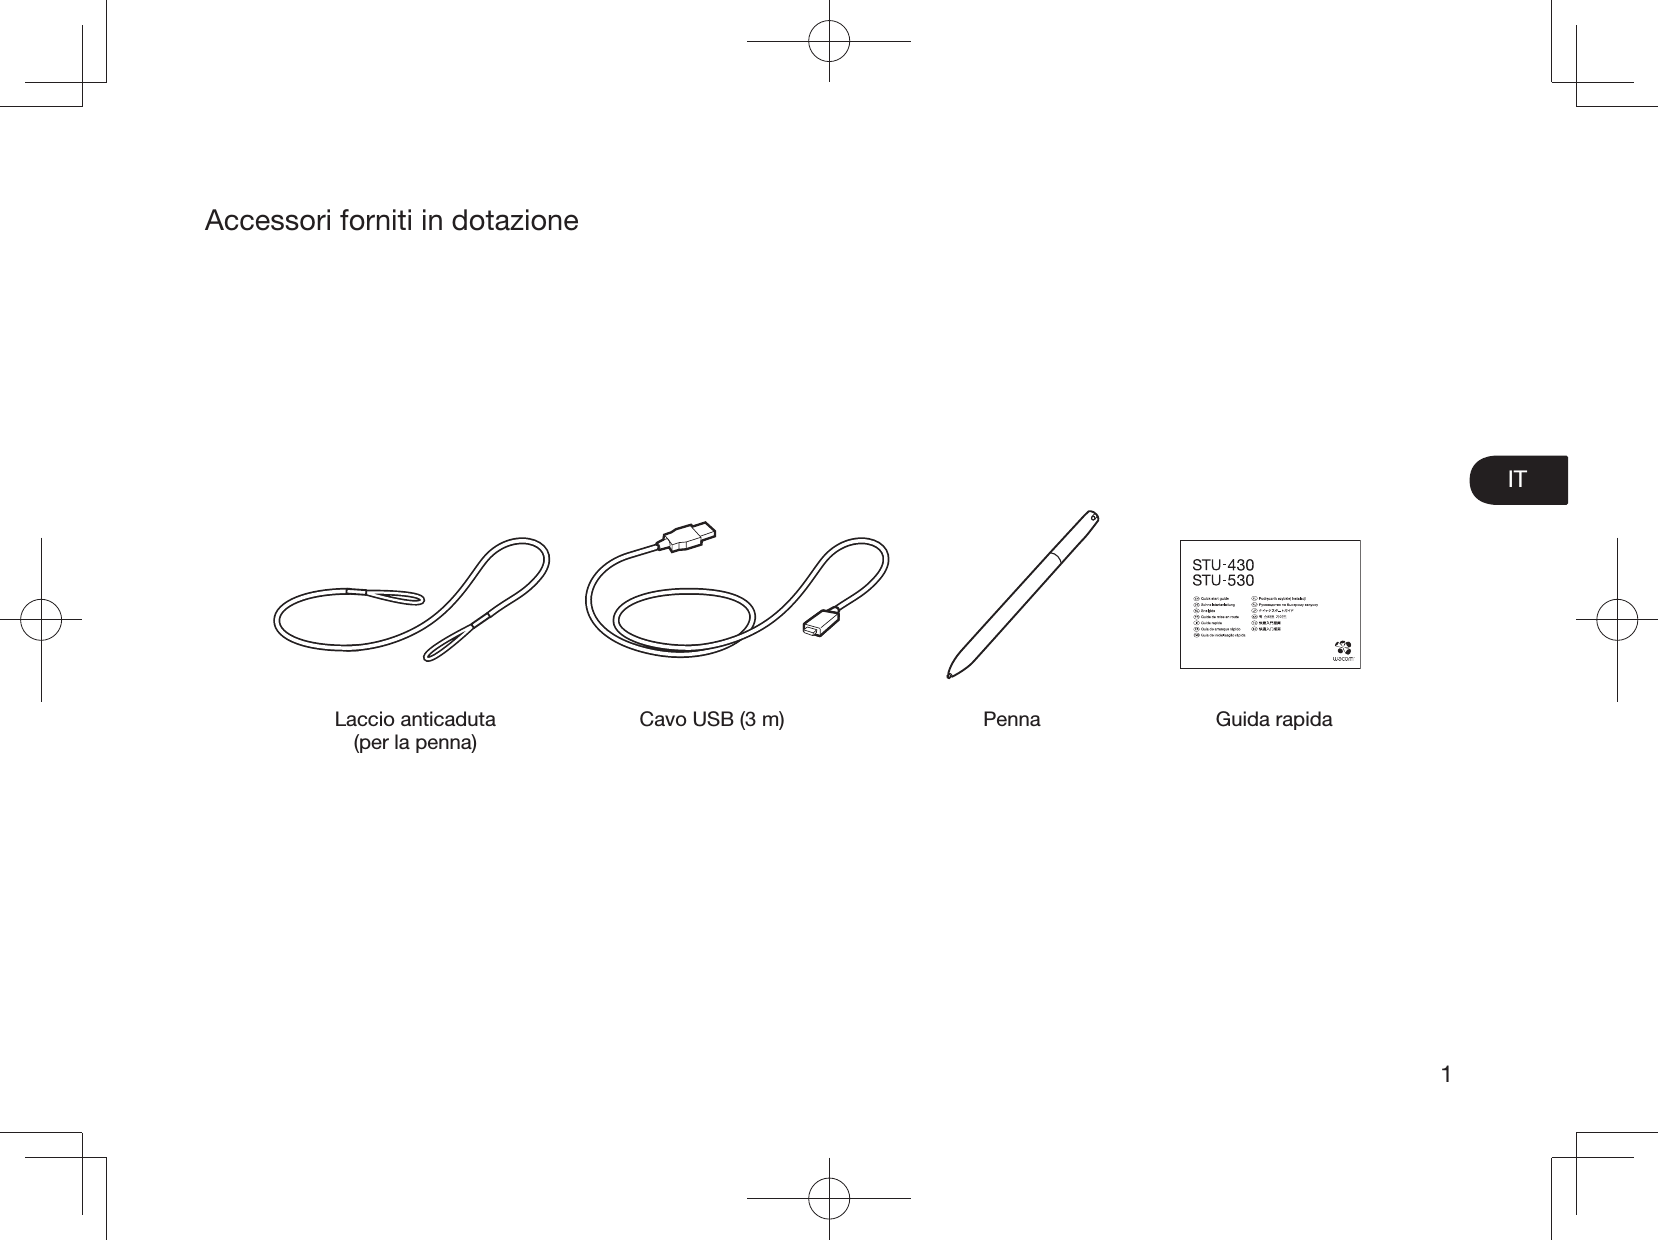 IT1Accessori forniti in dotazioneLaccio anticaduta (per la penna)Cavo USB (3 m) Penna Guida rapida